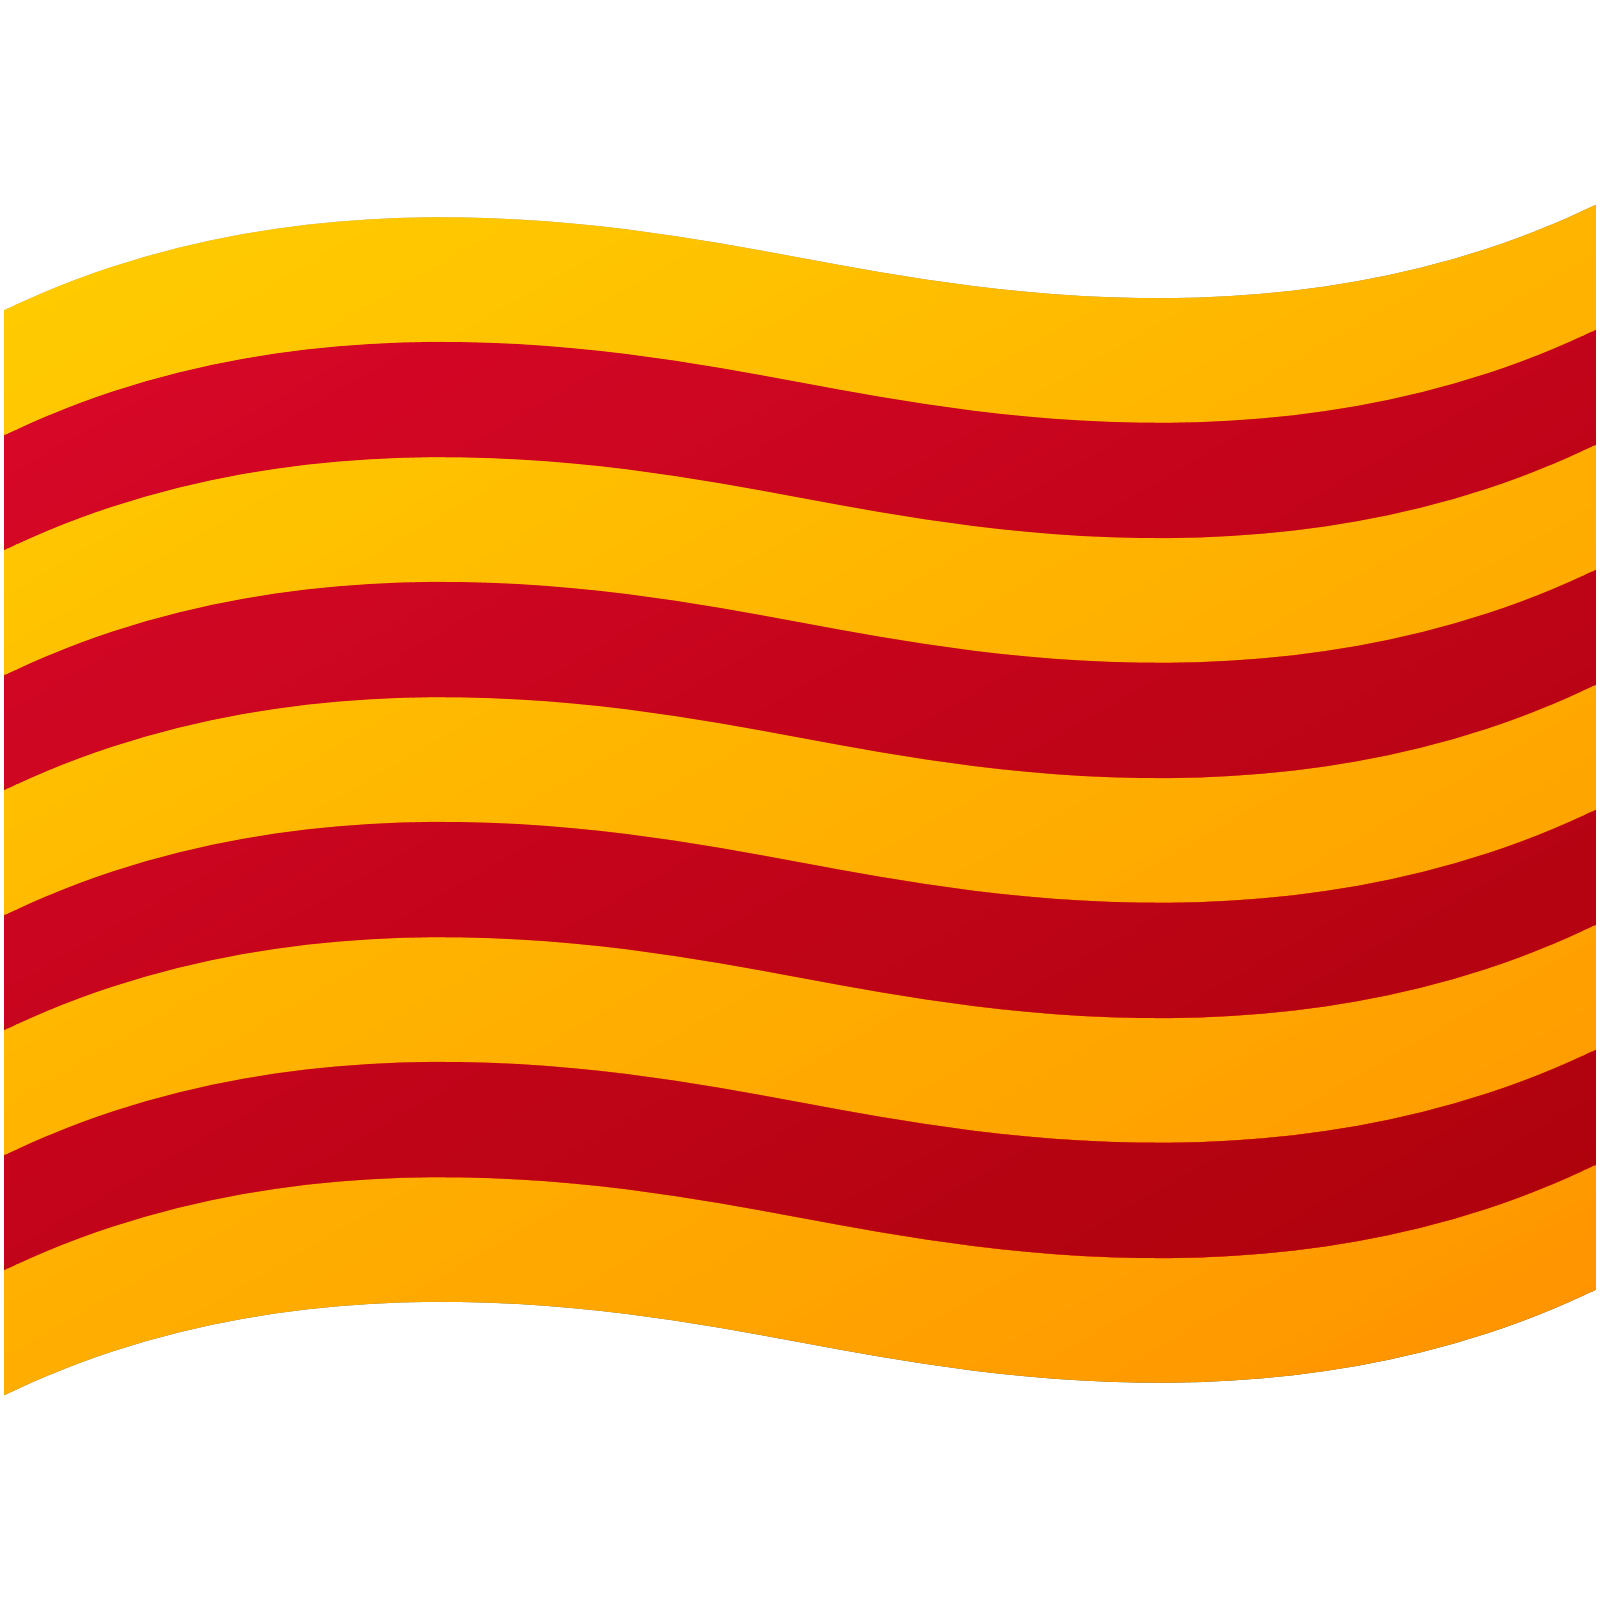 Emoticona de la bandera catalana Senyera_google